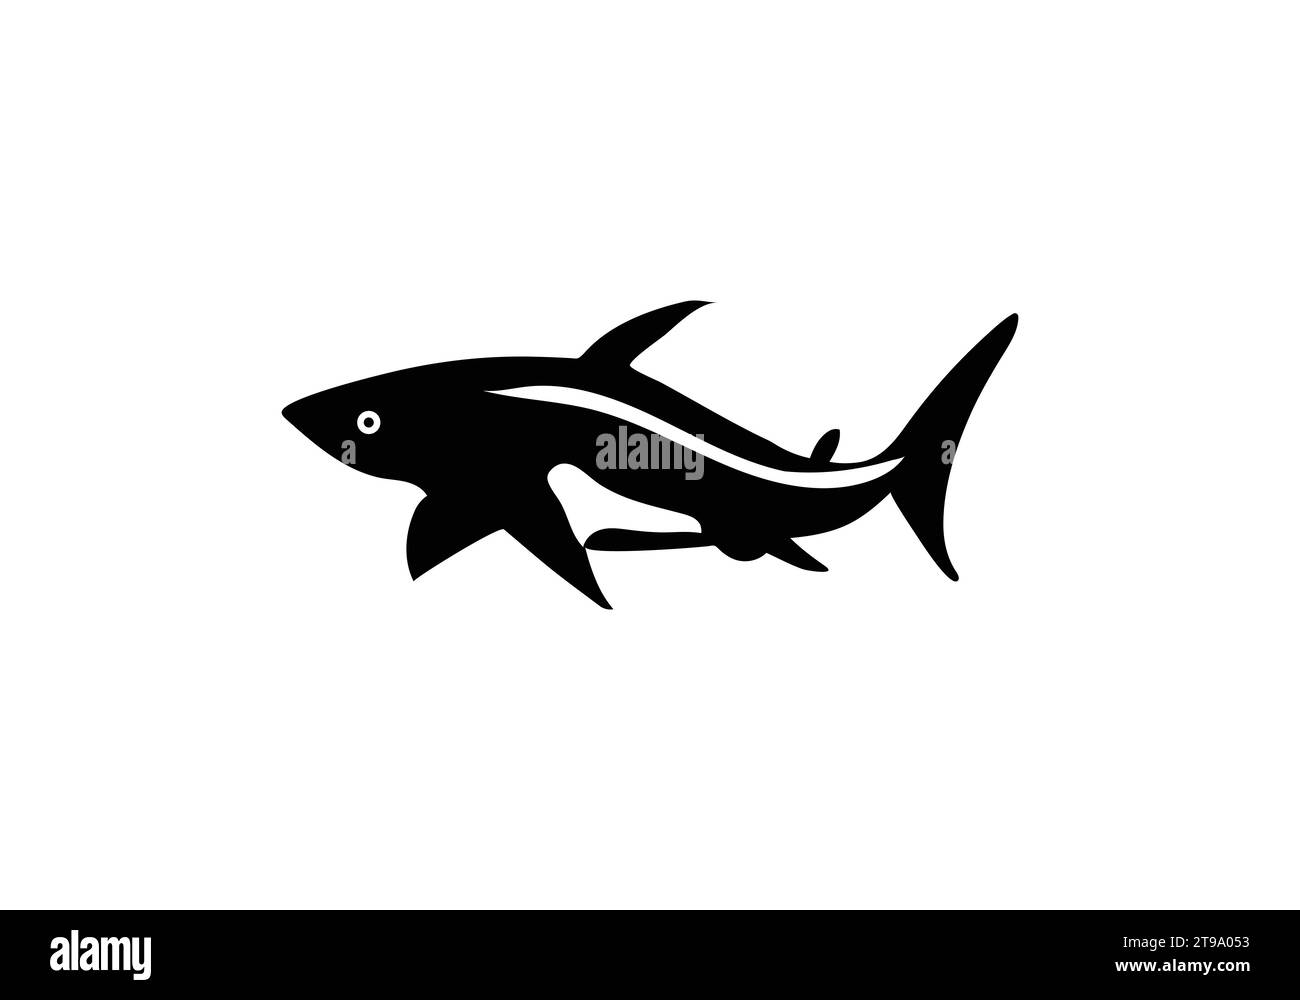 Icona di illustrazione del design in stile minimal Bull Shark Illustrazione Vettoriale